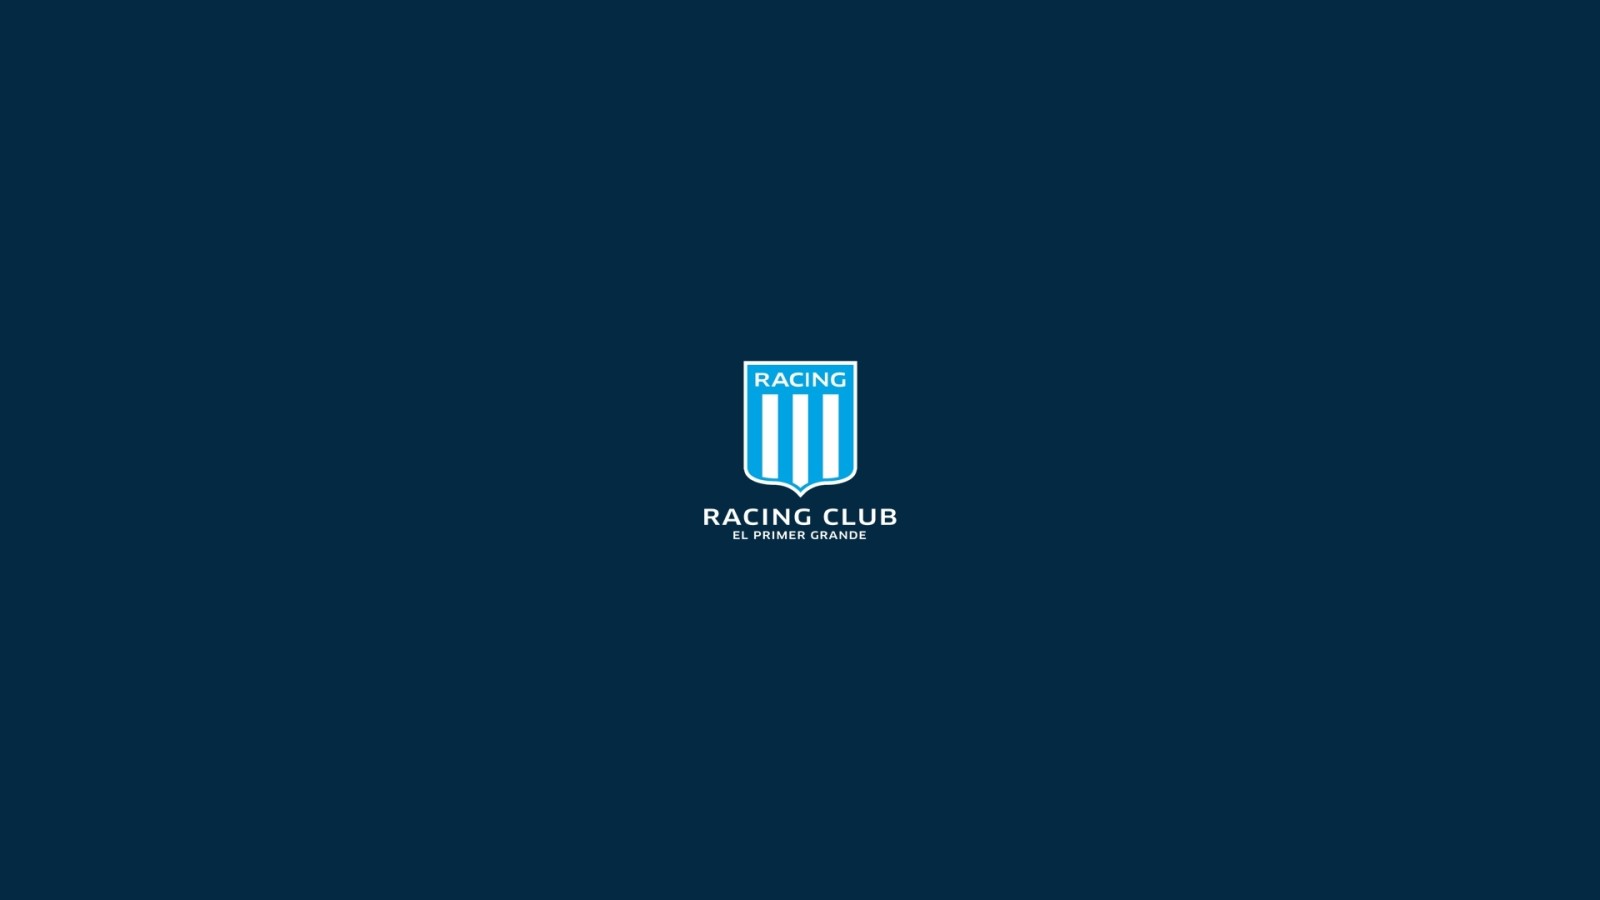 商标, 屏蔽, 阿根廷足球, 赛车俱乐部